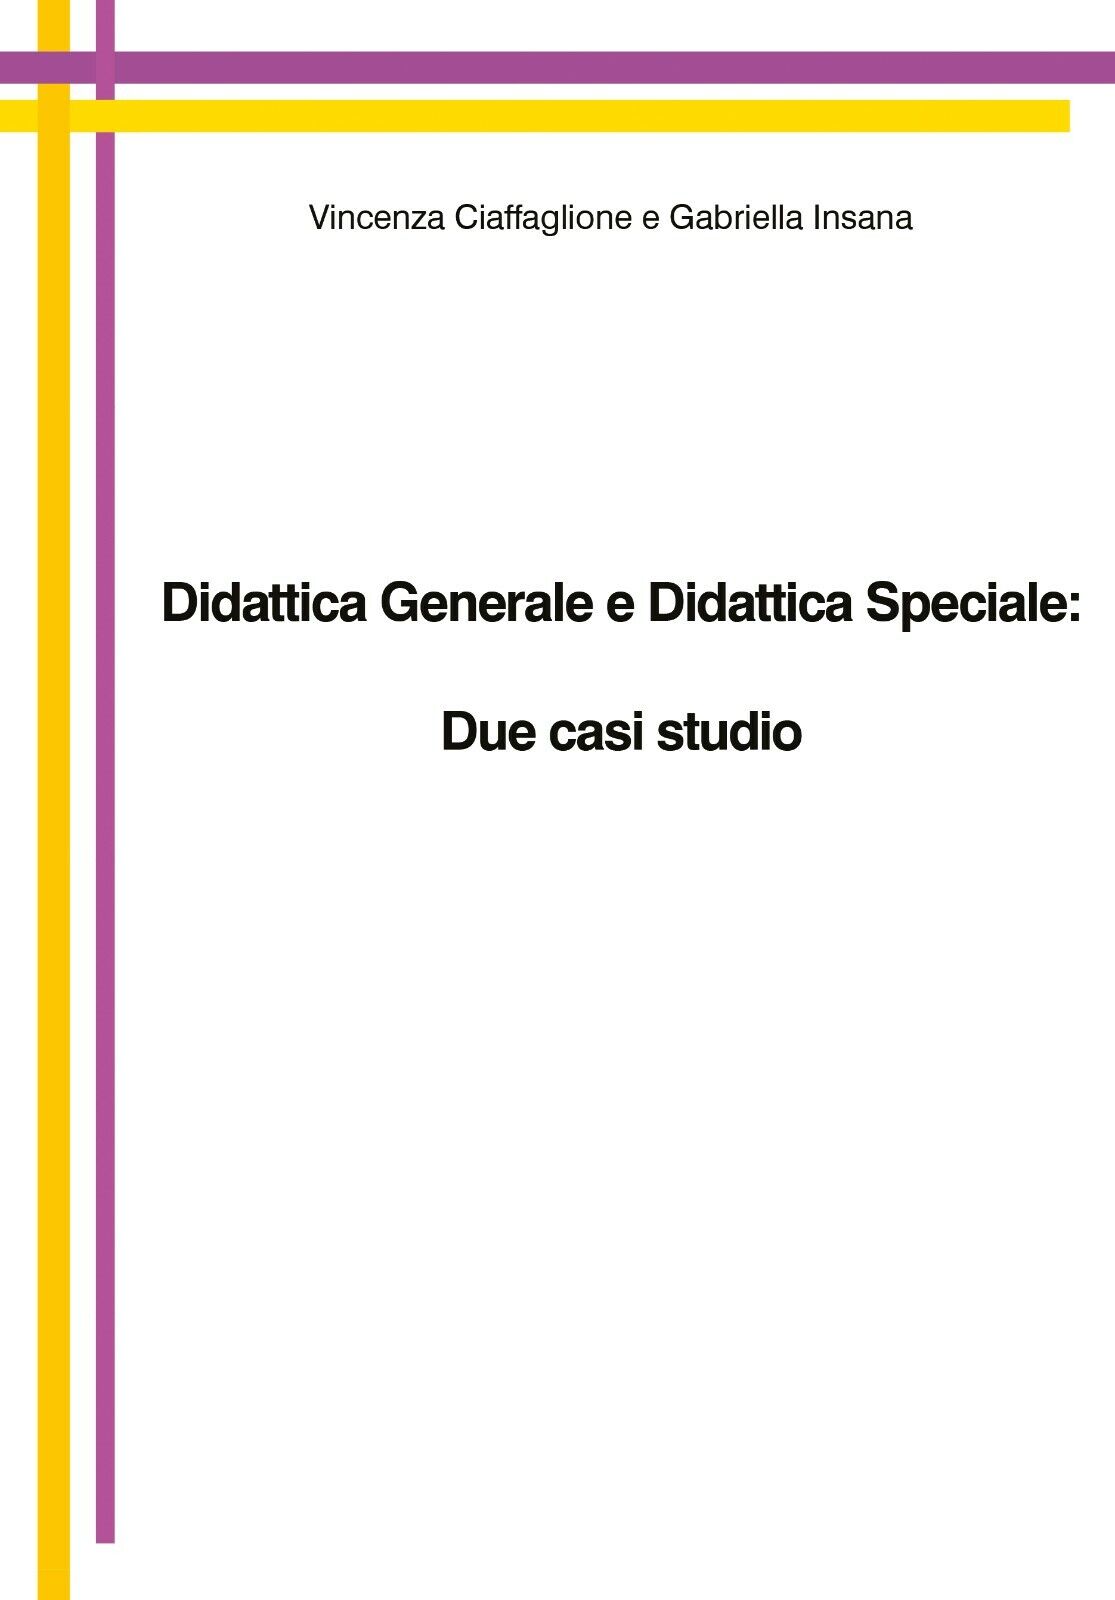 Didattica generale e didattica speciale: due casi studio -Ciaffaglione,Insana-P